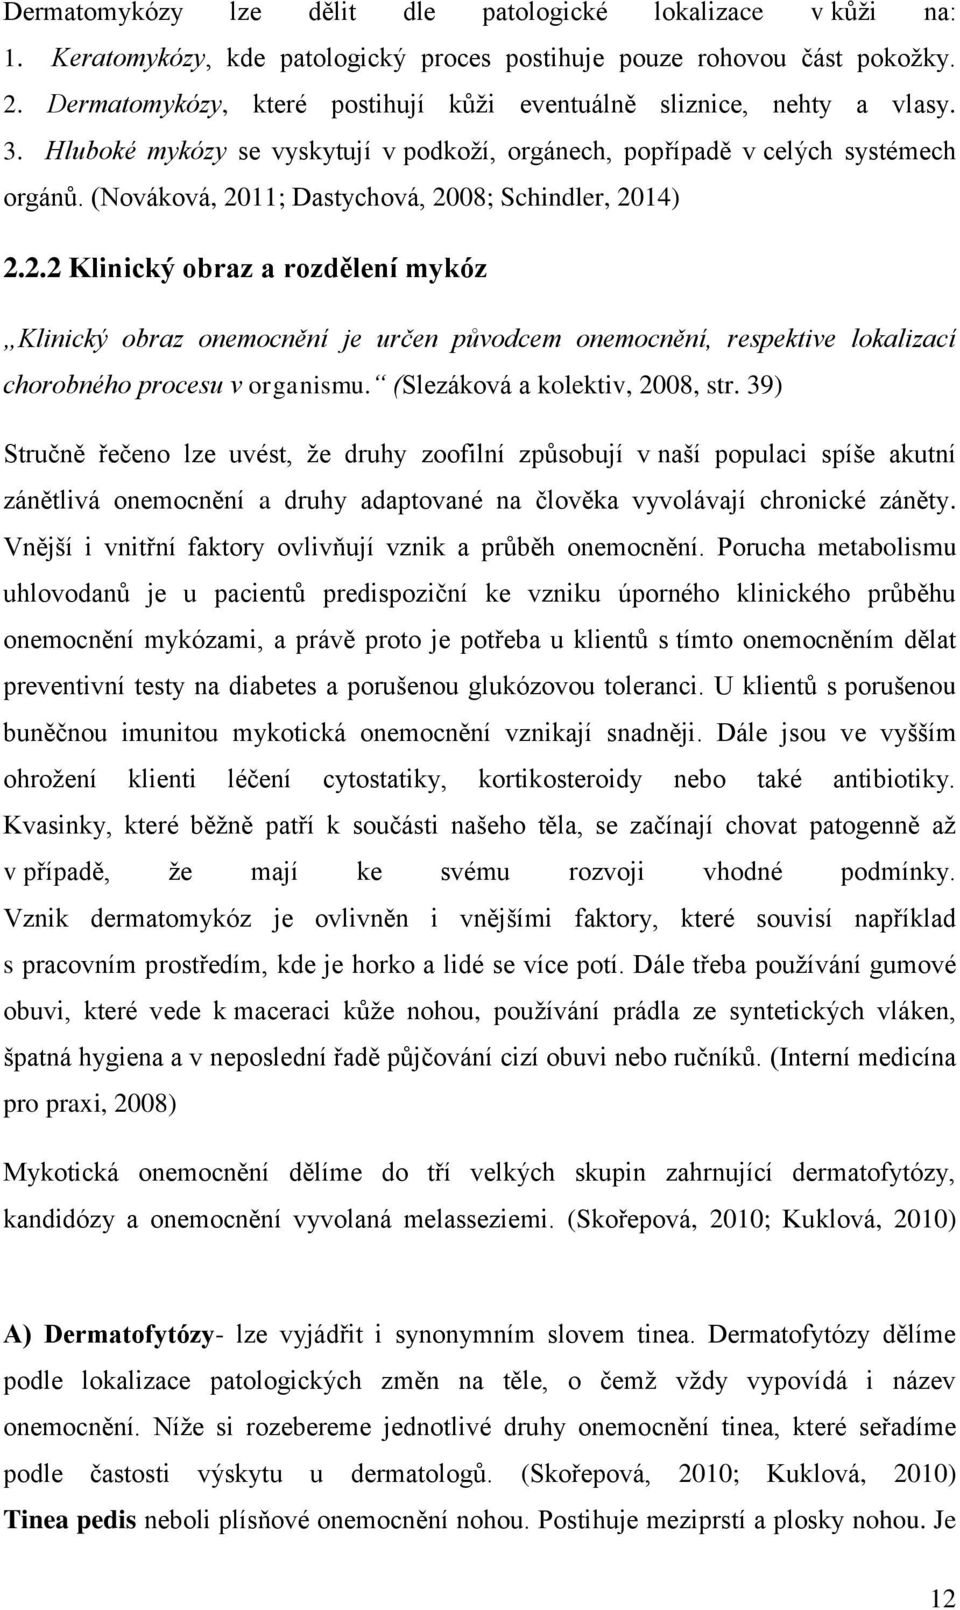 (Nováková, 2011; Dastychová, 2008; Schindler, 2014) 2.2.2 Klinický obraz a rozdělení mykóz Klinický obraz onemocnění je určen původcem onemocnění, respektive lokalizací chorobného procesu v organismu.